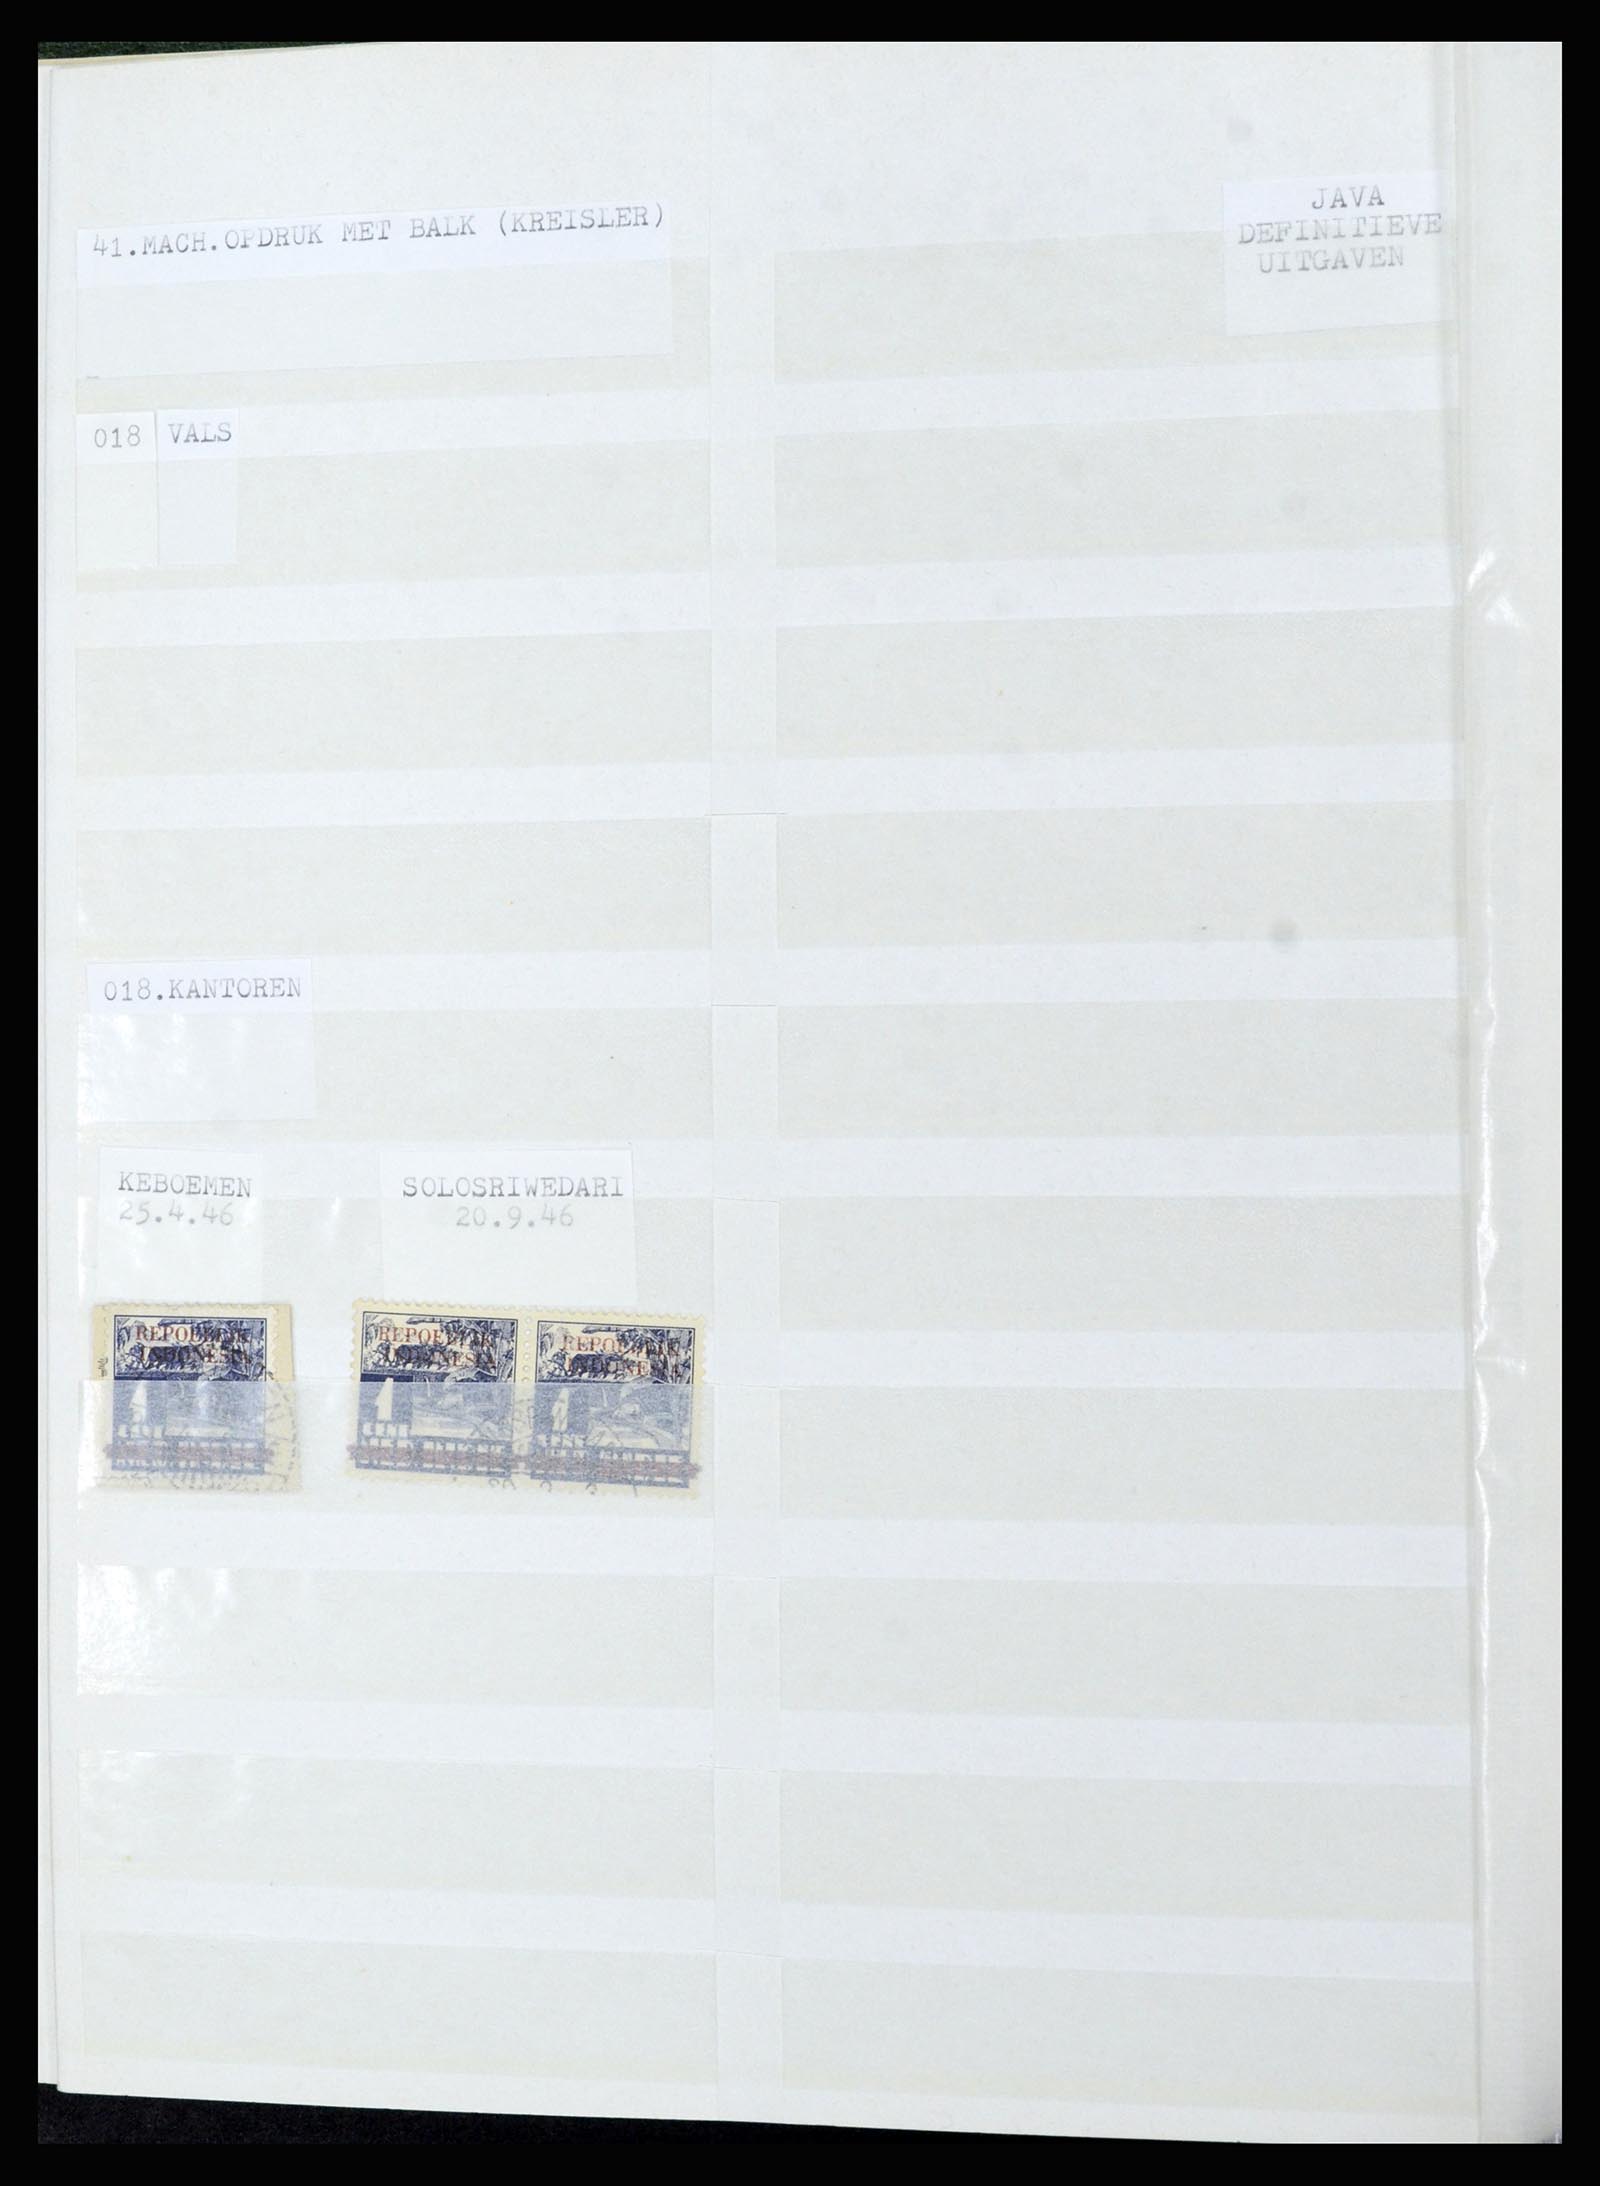 36742 070 - Stamp collection 36742 Dutch Indies interim period 1945-1949.